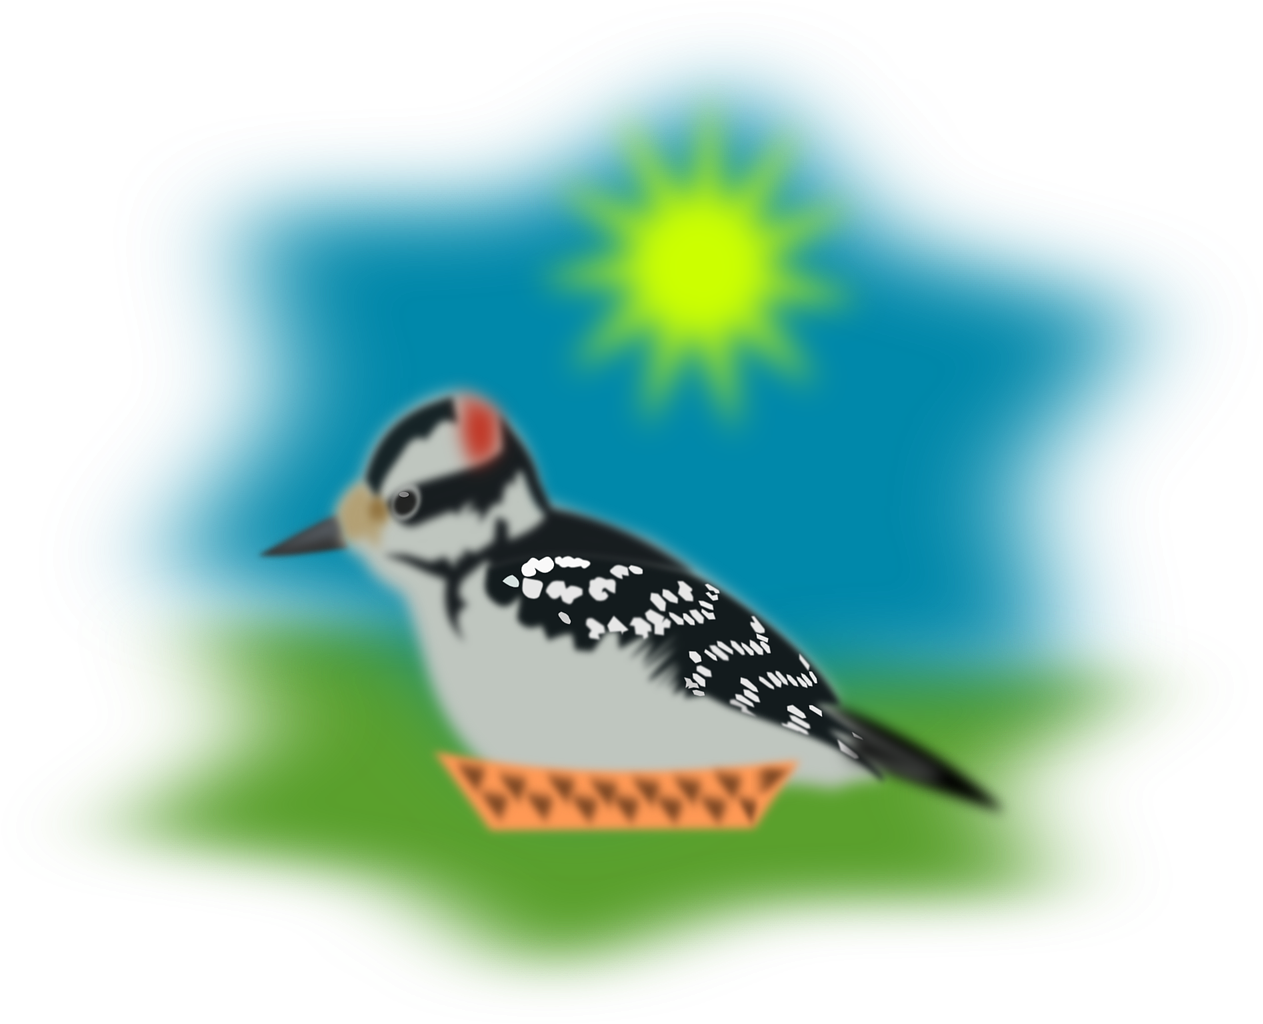 A Bird Sitting On A Bowl